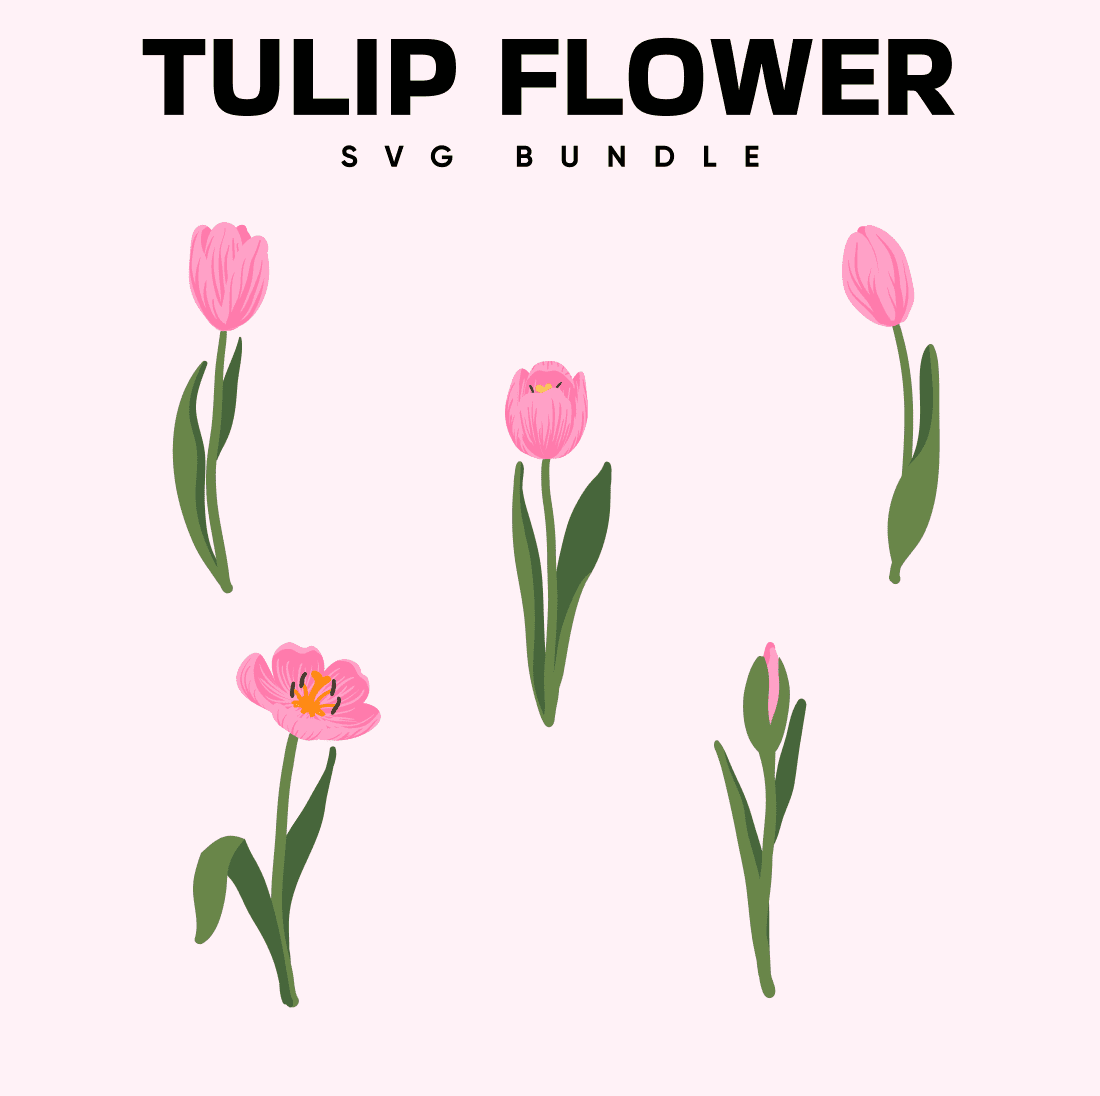 Tulip Flower SVG Bundle, main picture 1100x1100.